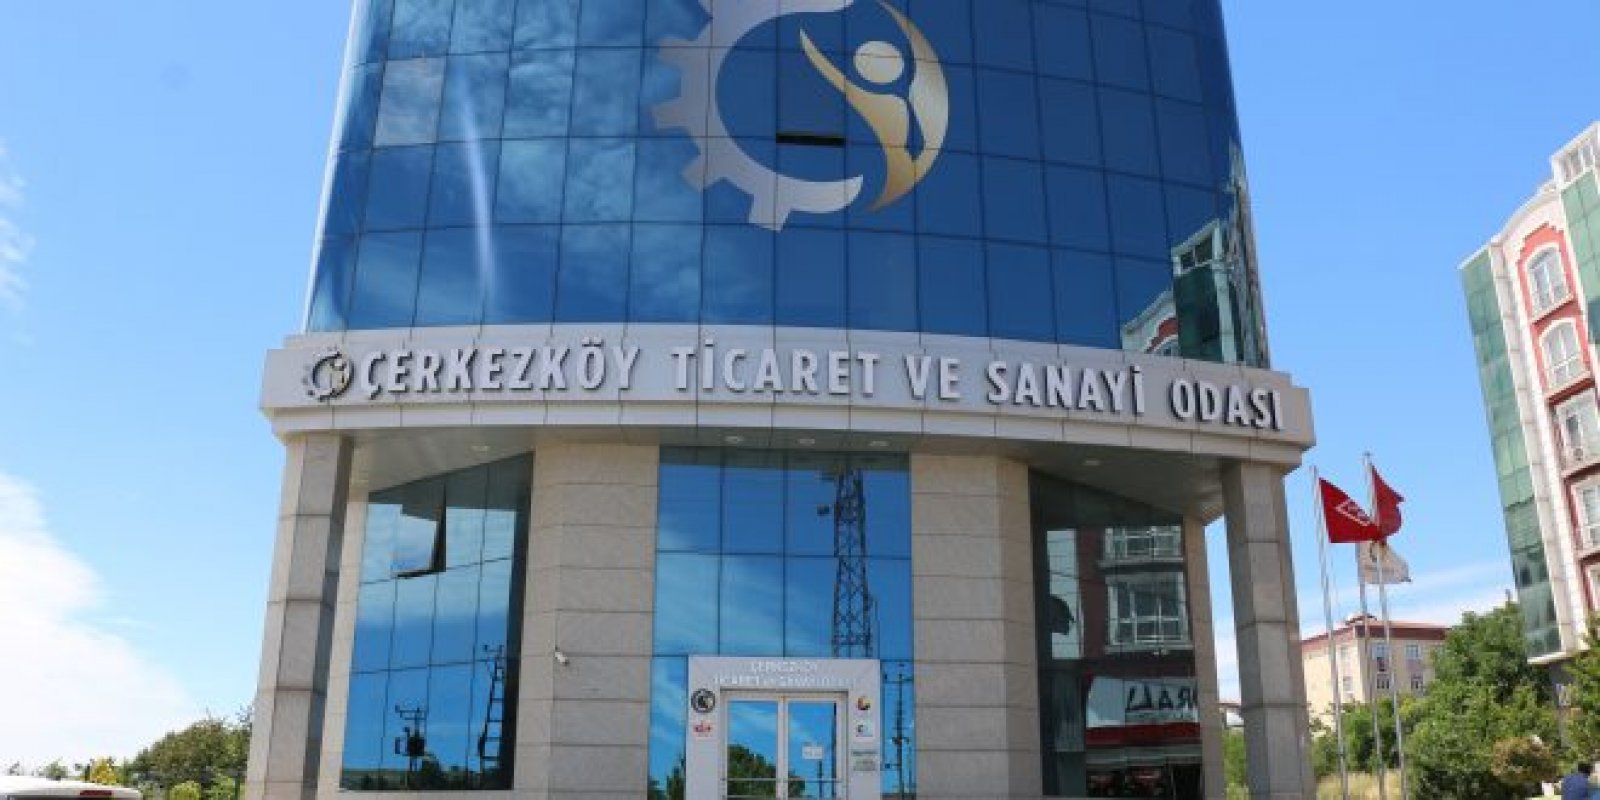 Çerkezköy Chamber of Commerce